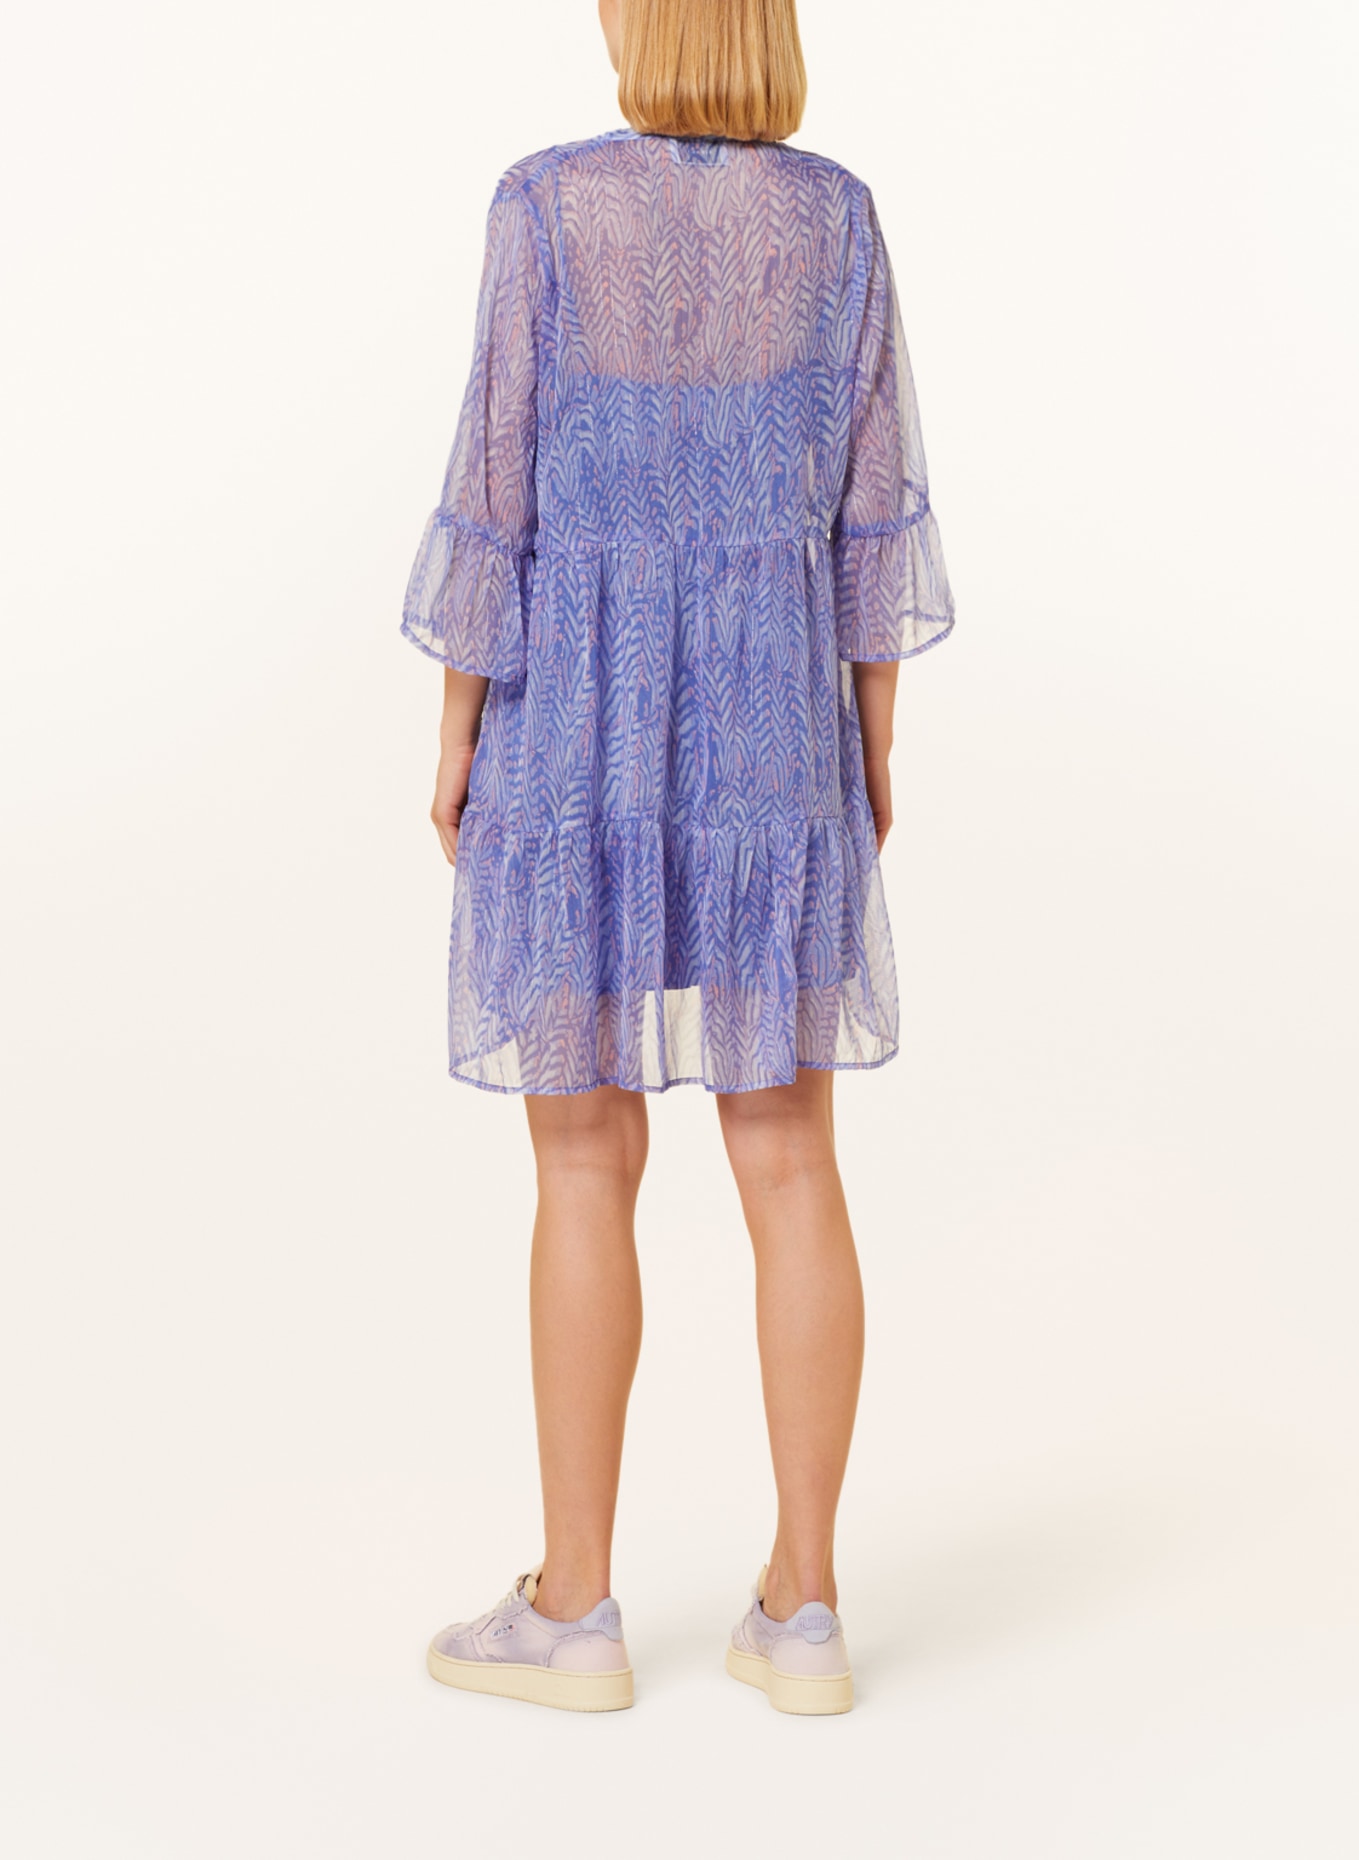 NEO NOIR Dress DENVER with 3/4 sleeves, Color: LIGHT BLUE/ LIGHT PINK/ BLUE (Image 3)